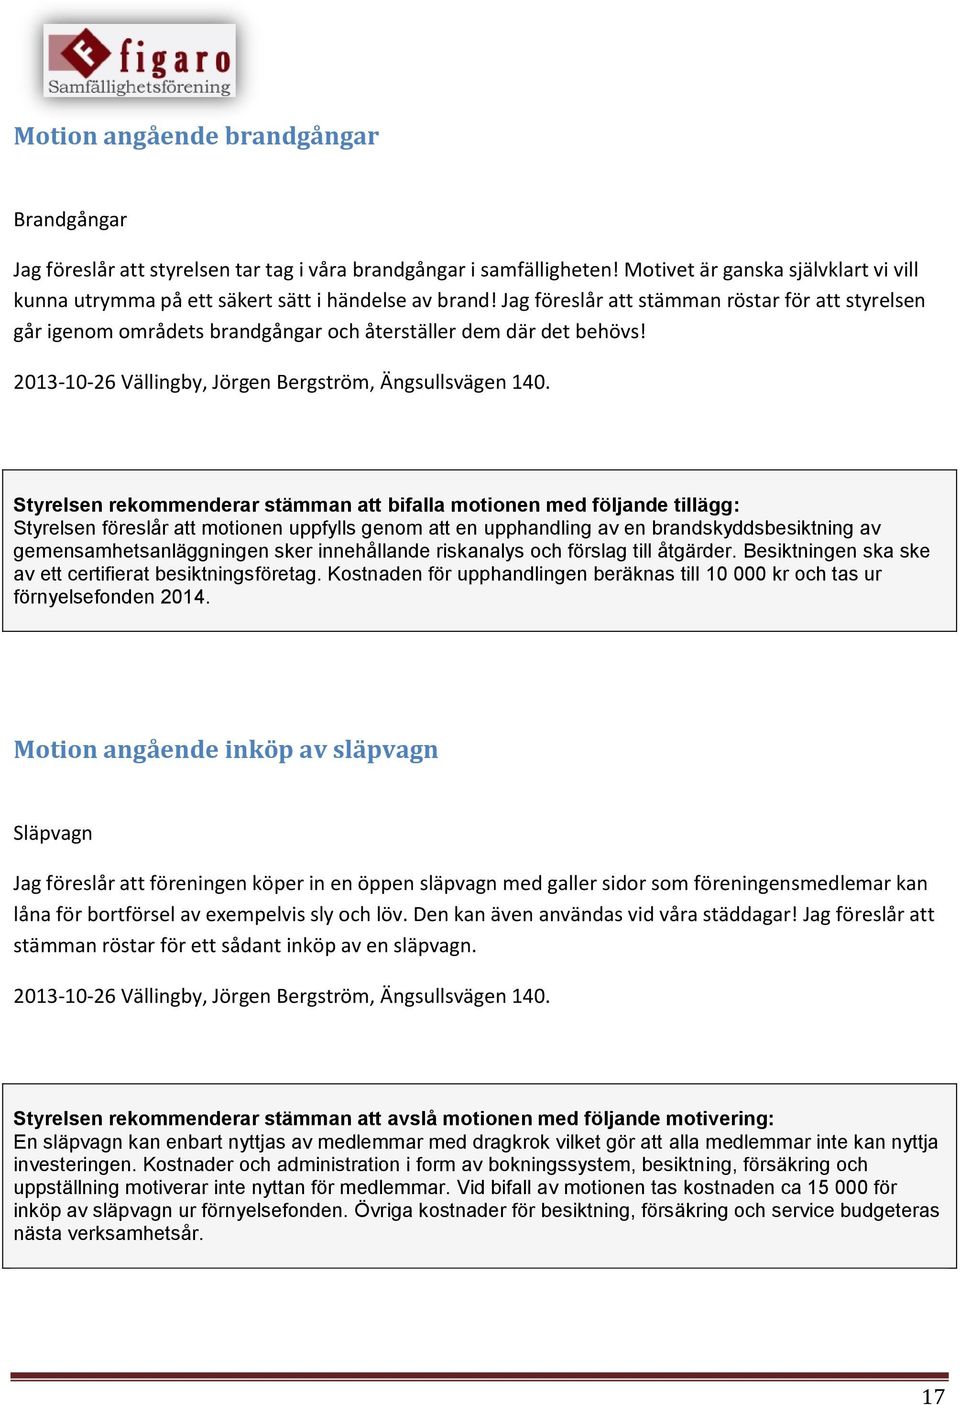 Jag föreslår att stämman röstar för att styrelsen går igenom områdets brandgångar och återställer dem där det behövs! 2013-10-26 Vällingby, Jörgen Bergström, Ängsullsvägen 140.